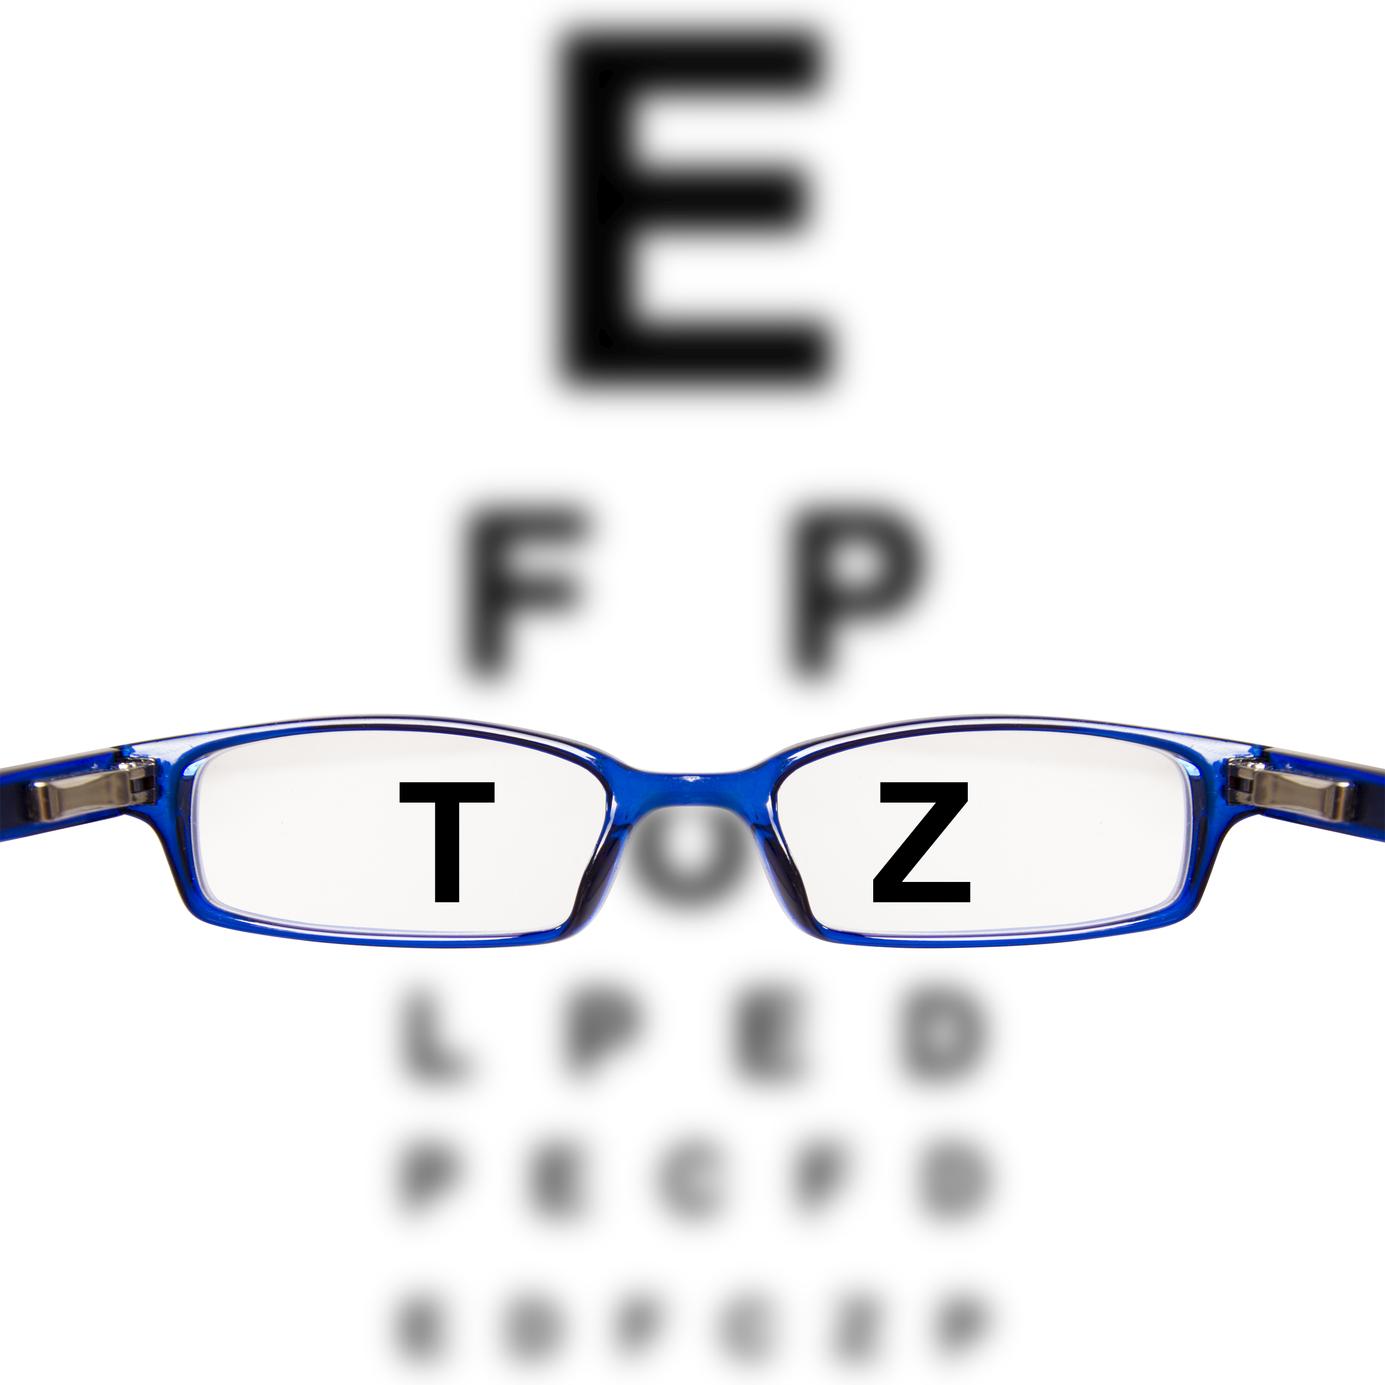 Miopie și hipermetropie la ochi diferiți. Lentile pentru astigmatism și miopie ochi diferiți